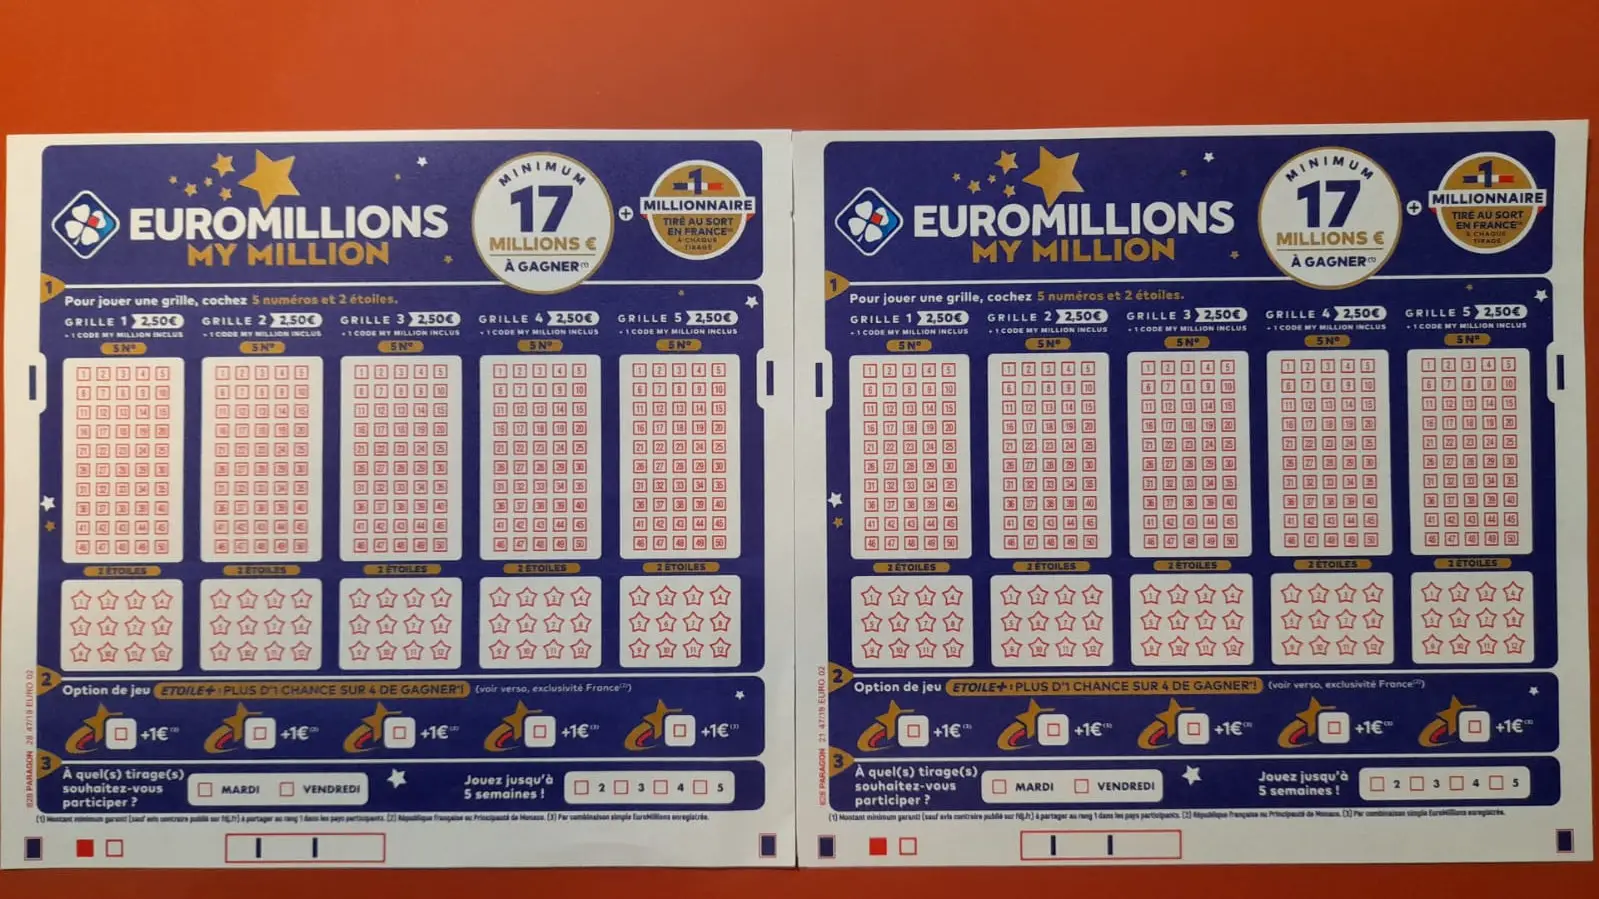 欧洲百万彩票超级抽奖 2023 – 大奖 200 百万欧元! | 彩票强力球